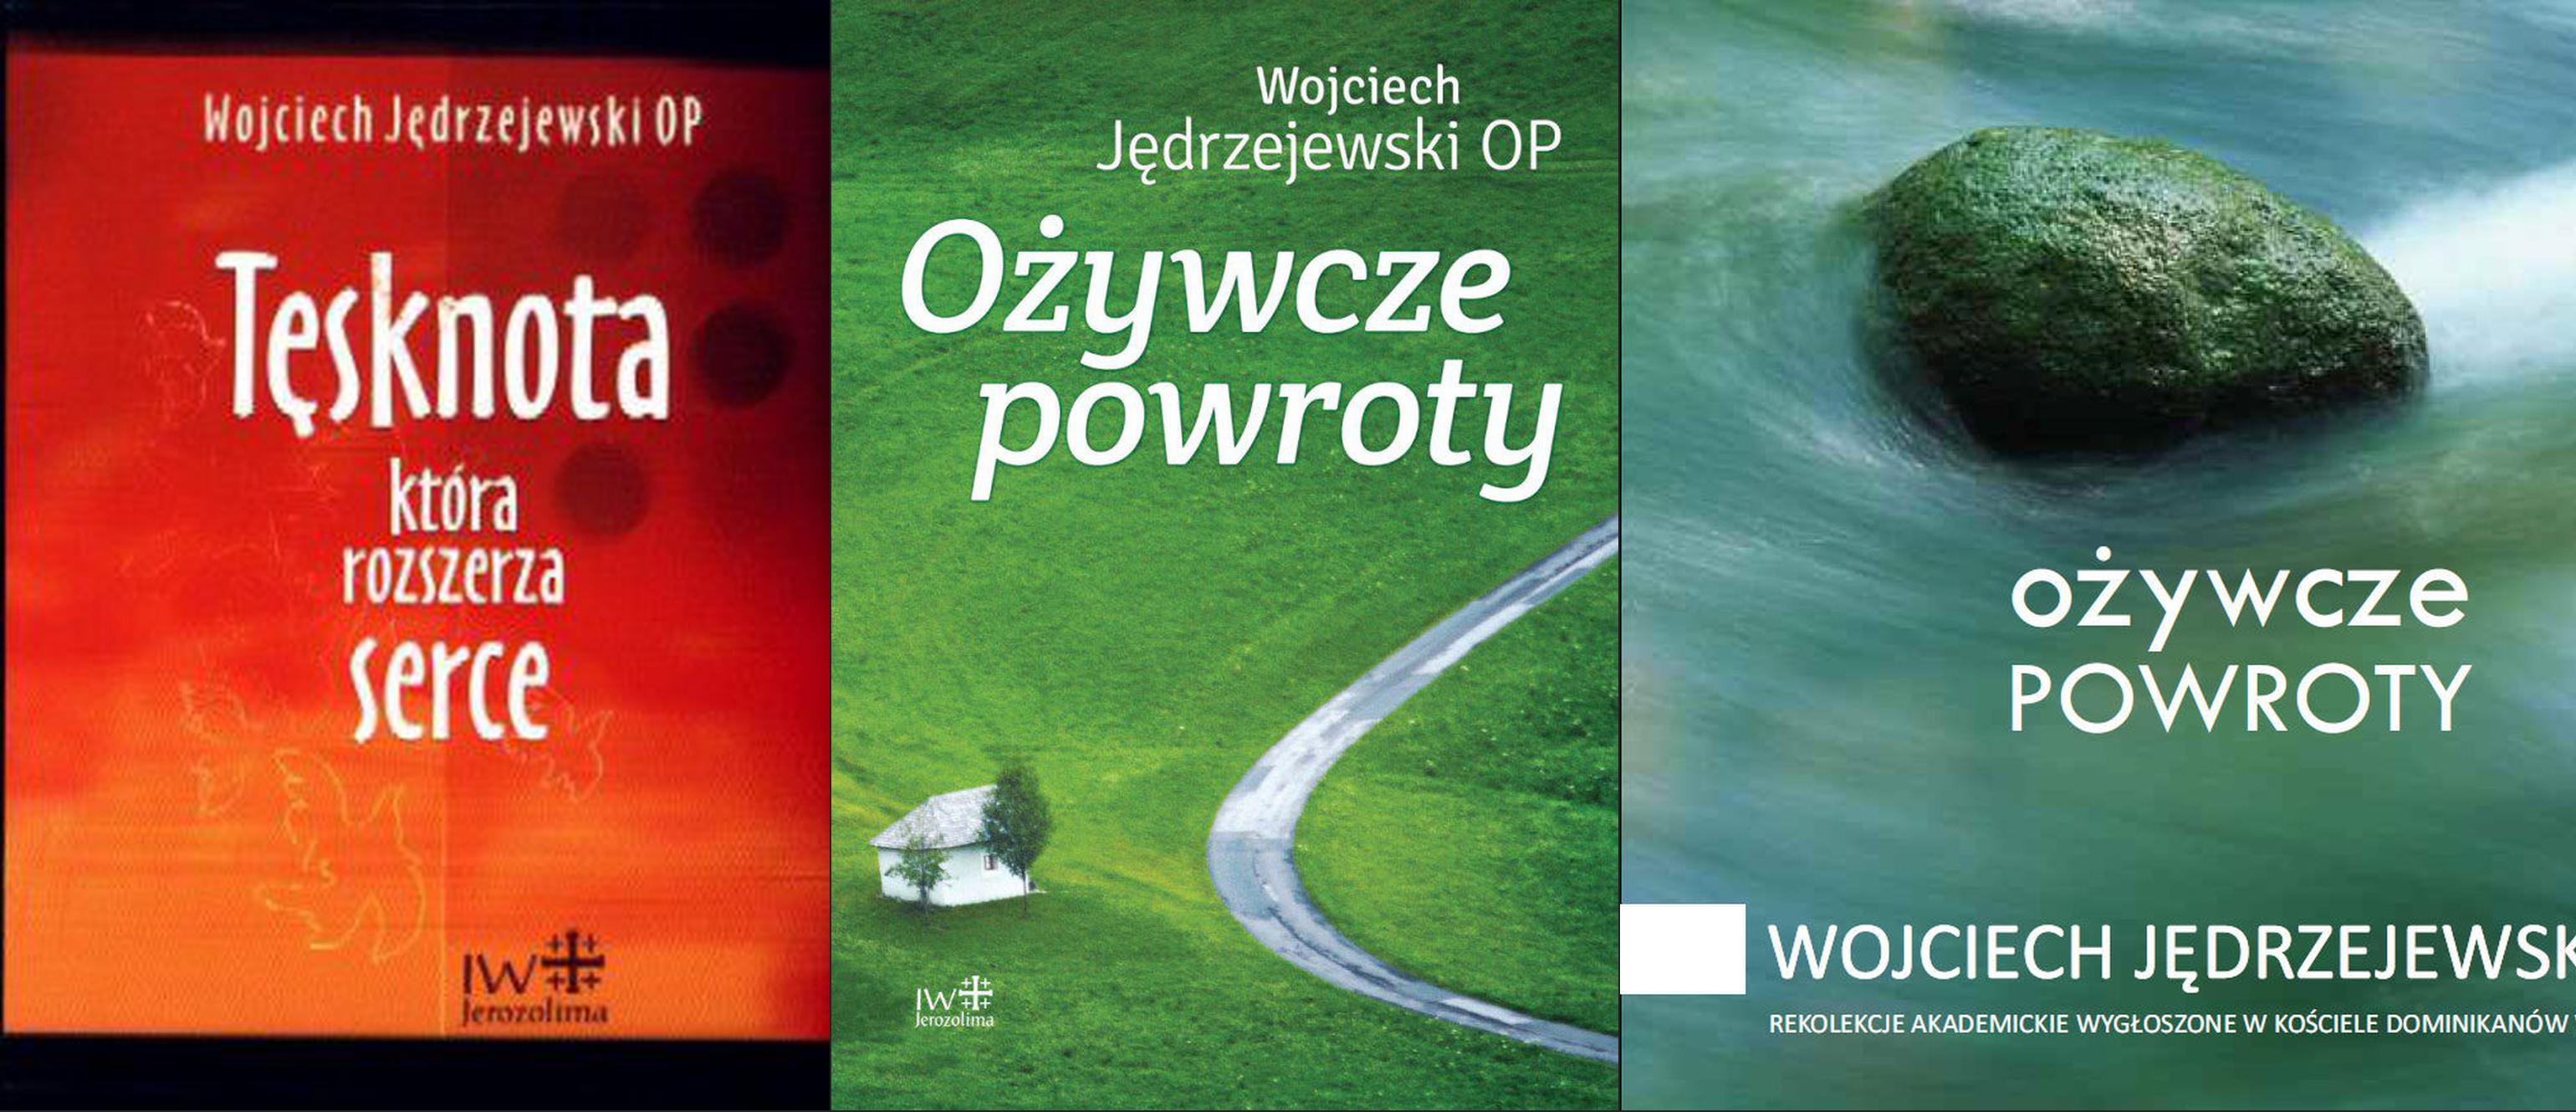 Wojciech Jędrzejewski OP okładka